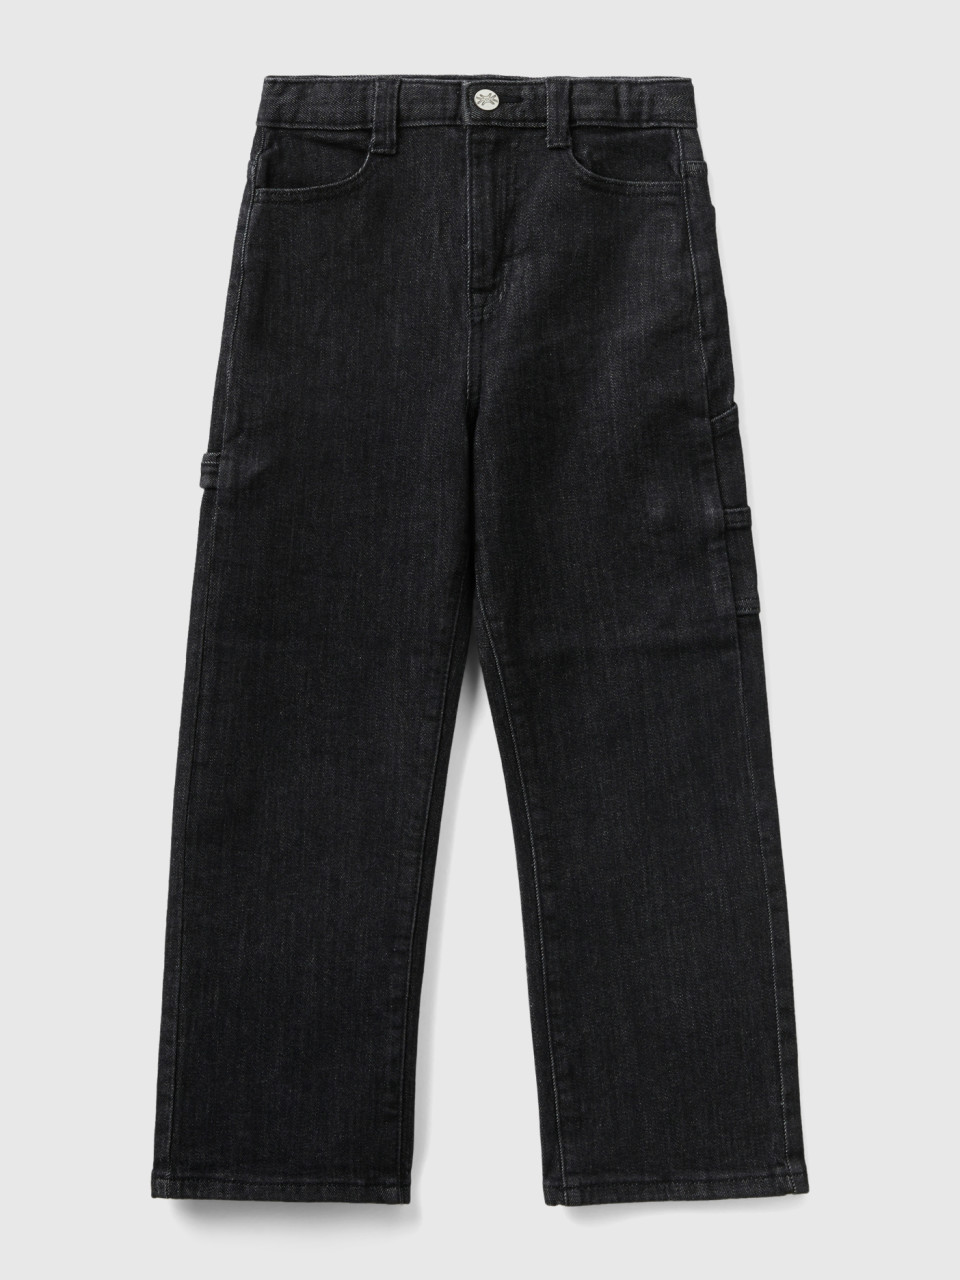 Benetton, Worker Style Jeans, Black, Kids